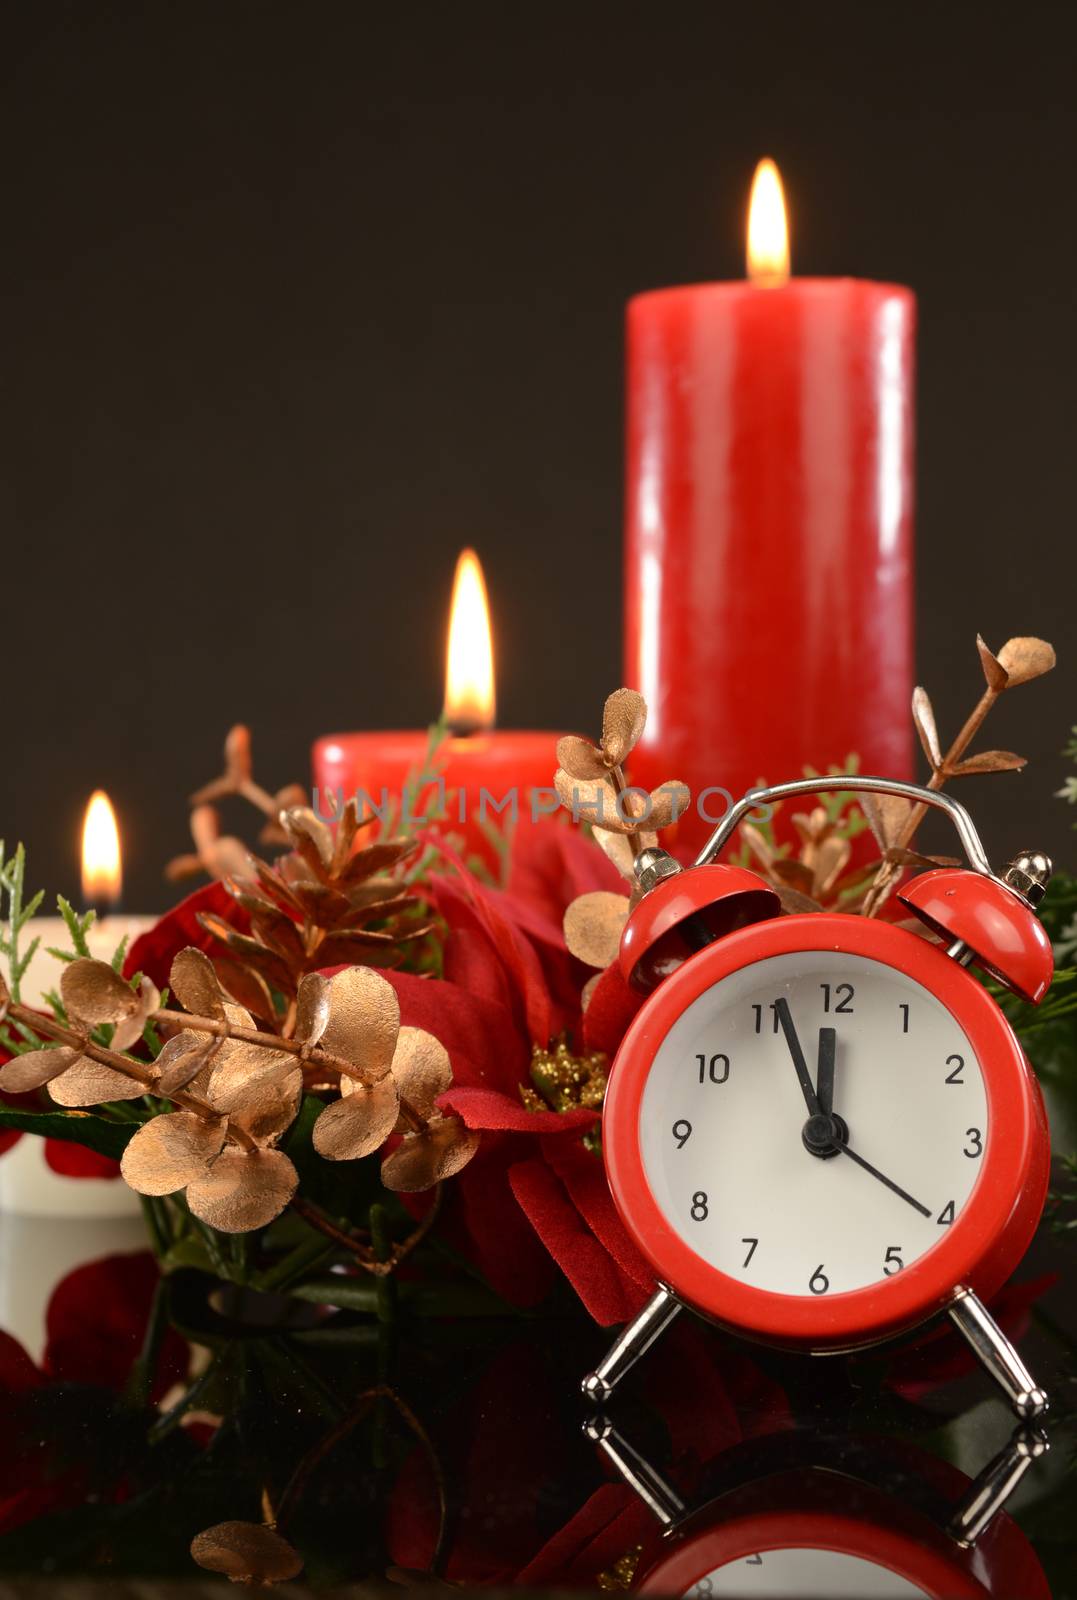 A festive scene with an alarm clock for the Christmas season.